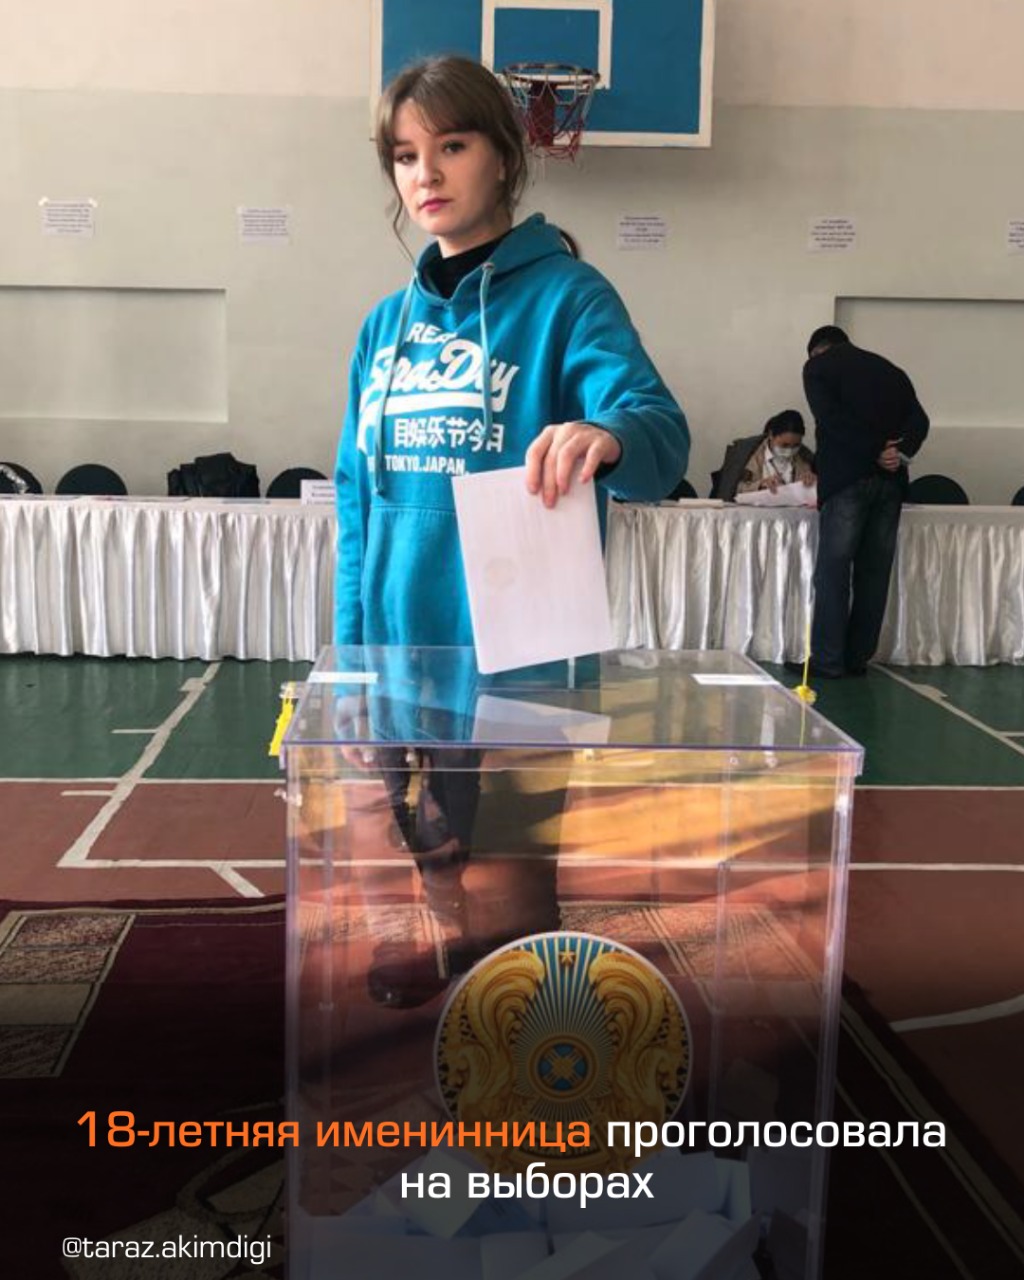 18-летняя именинница проголосовала на выборах